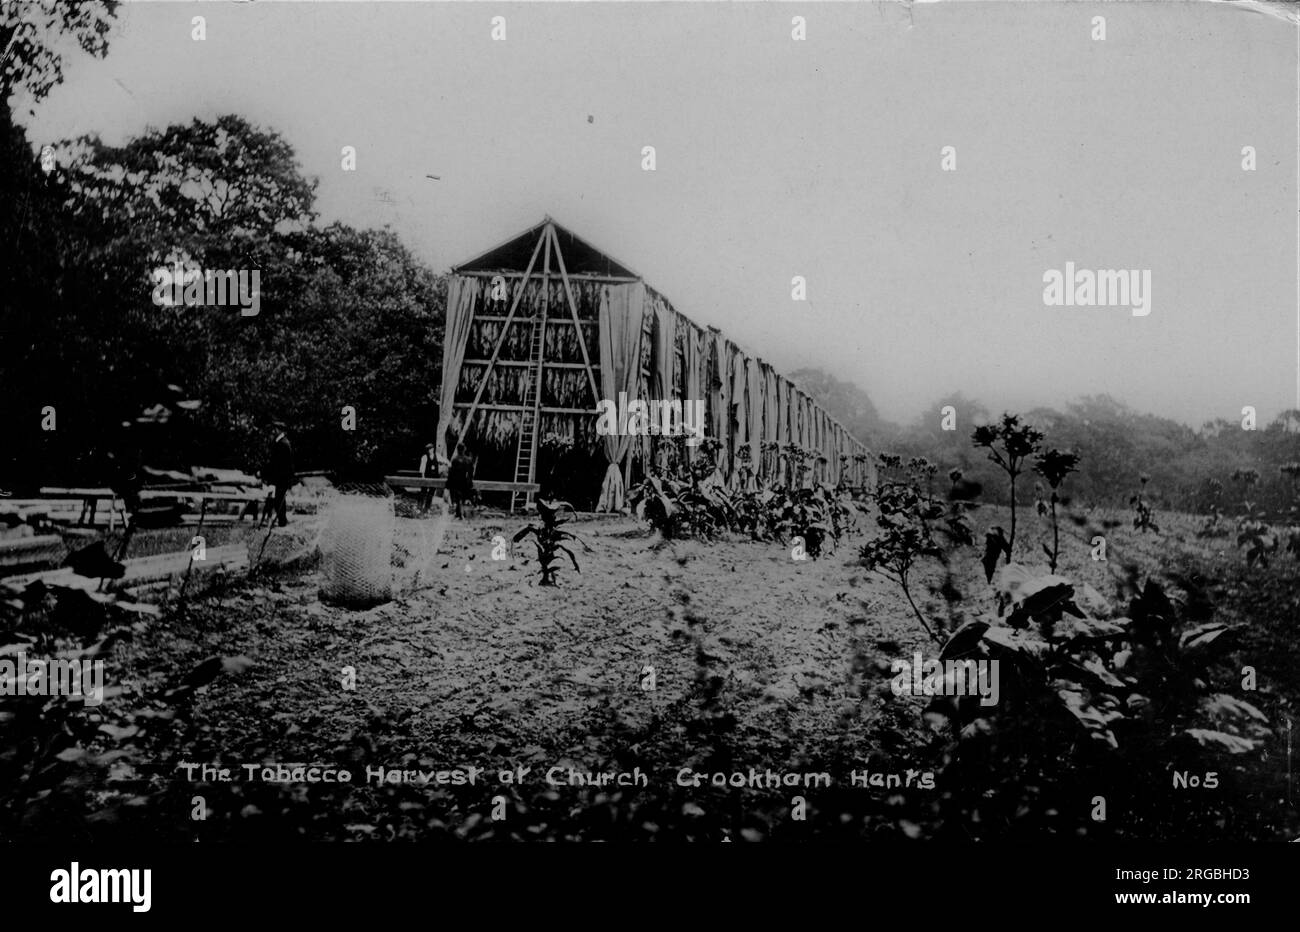 L'immagine mostra una lunga fila di alti capannoni di essiccazione nel campo del tabacco, con piante e, appena visibili, figure. Foto Stock